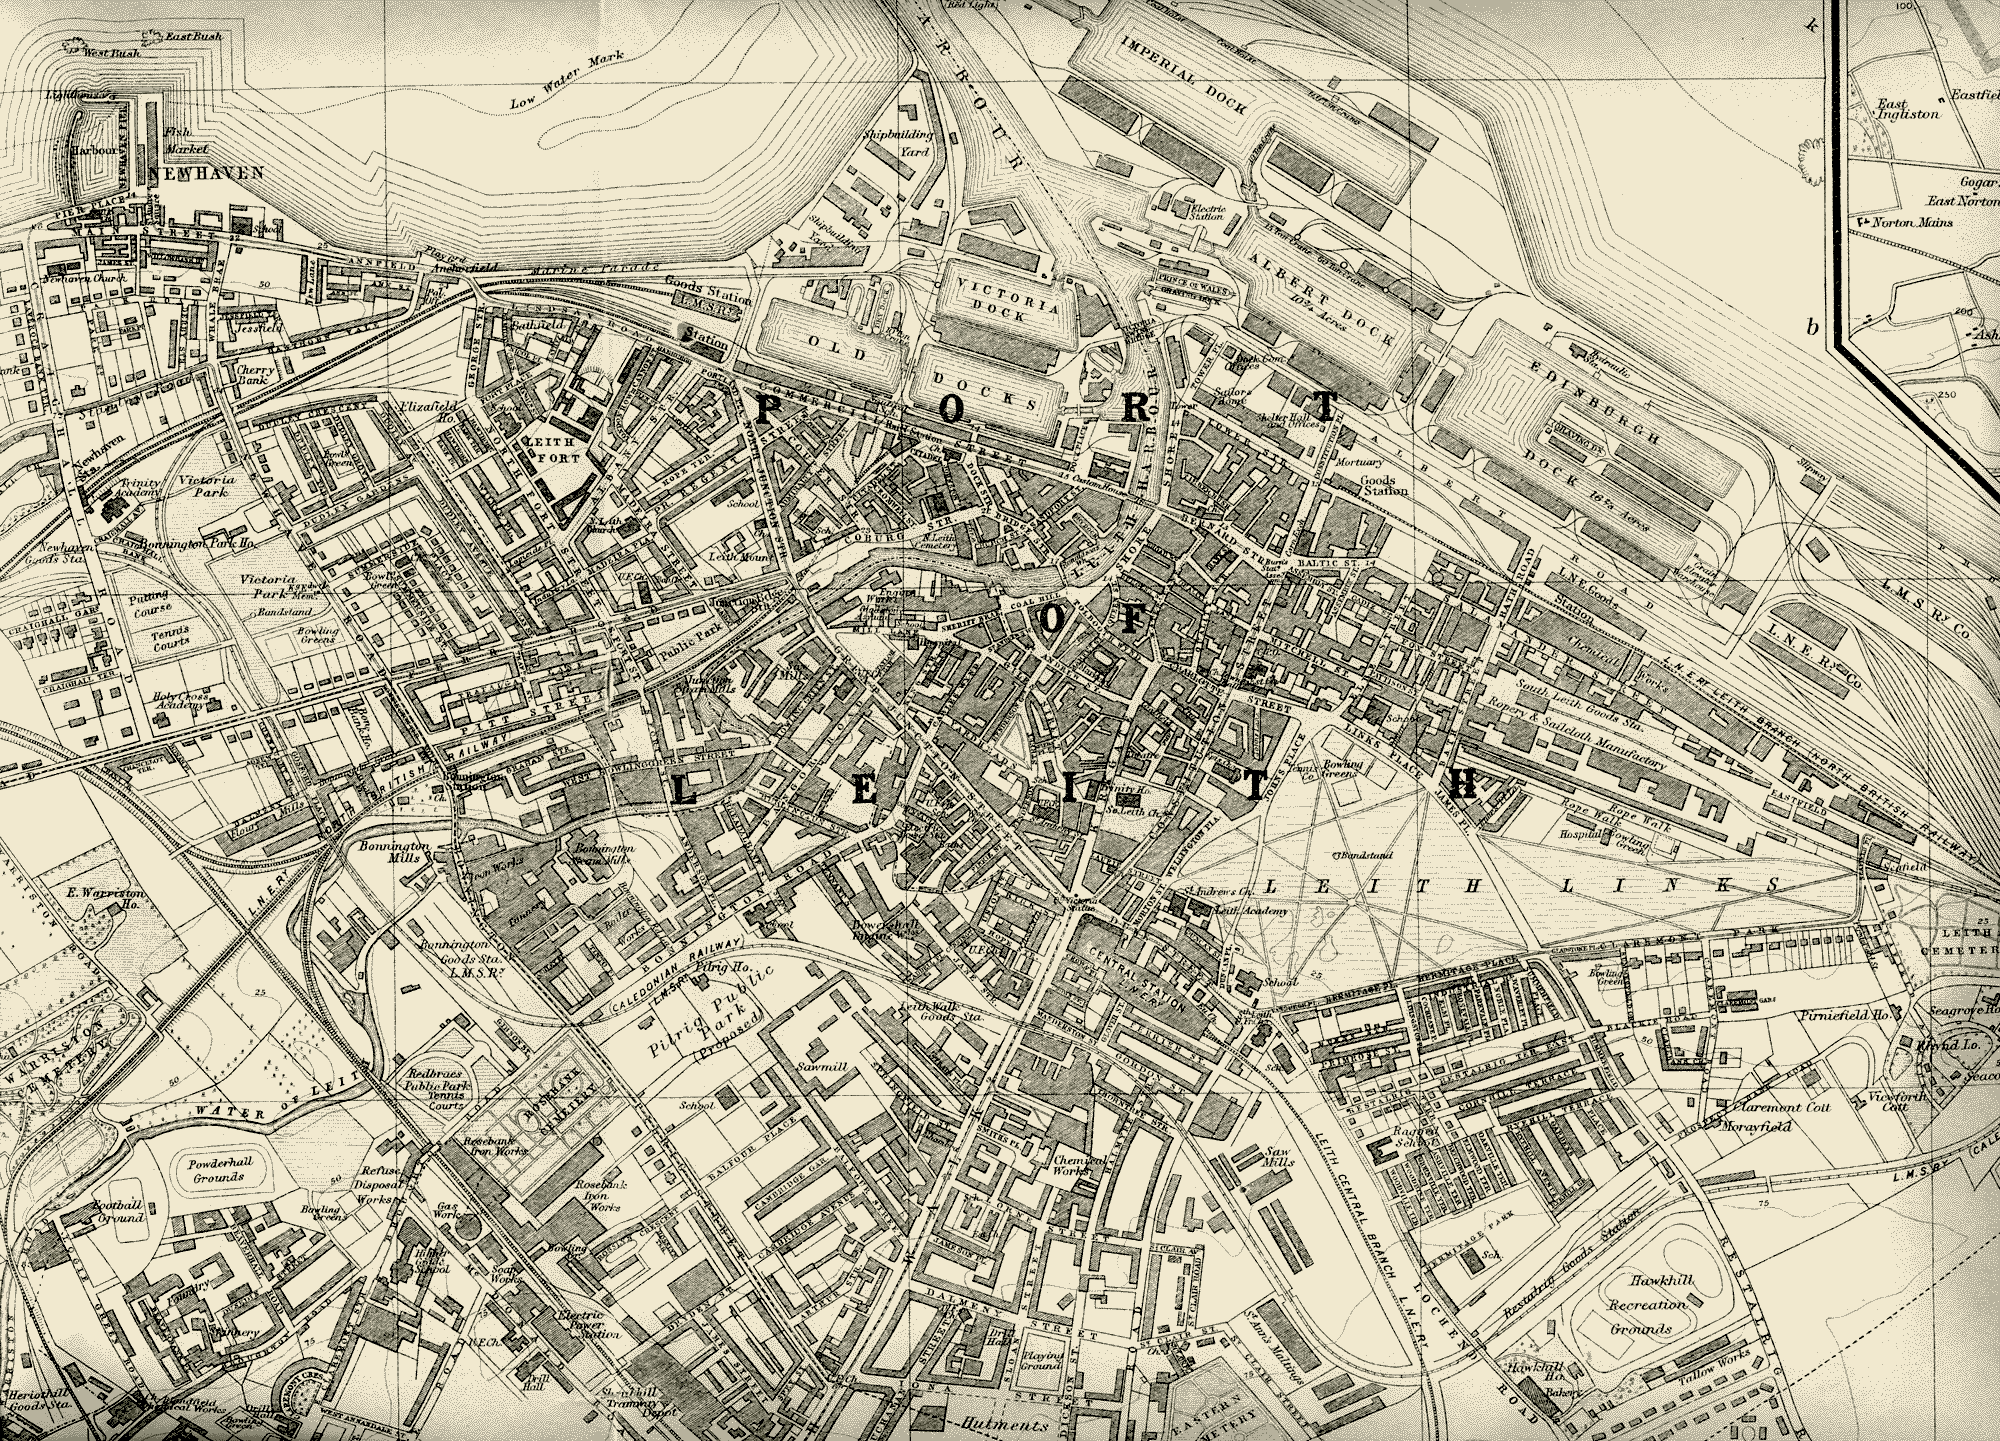 Edinburgh and Leith map, 1925  -  Leith section